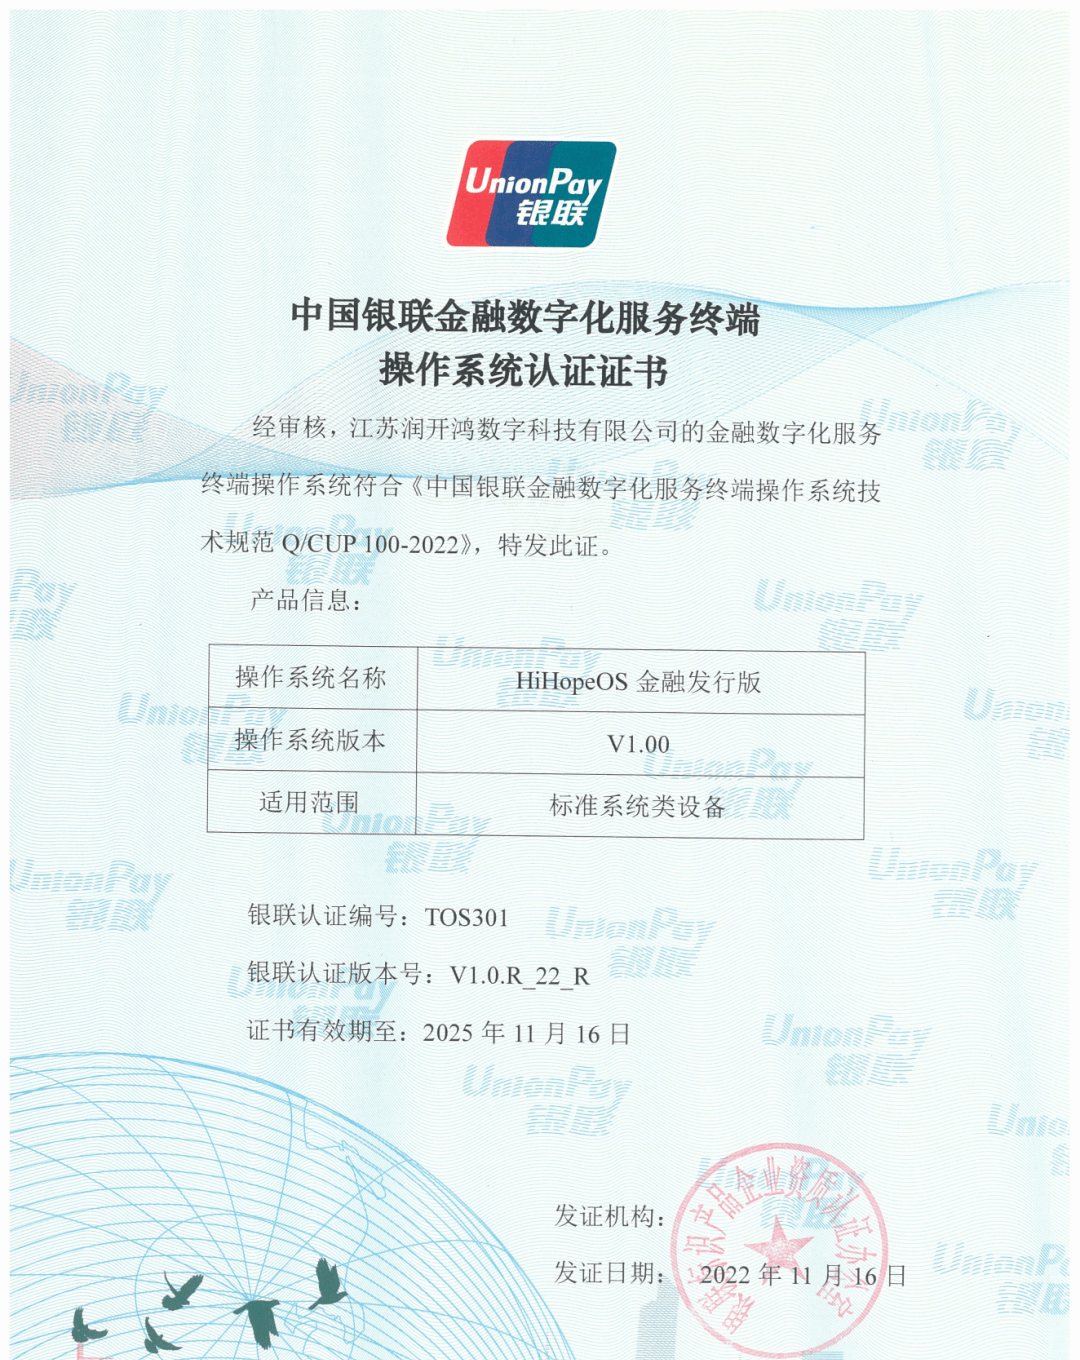 苹果软件商店中国版
:中国银联首张，润和软件 HiHopeOS 金融发行版获颁认证证书